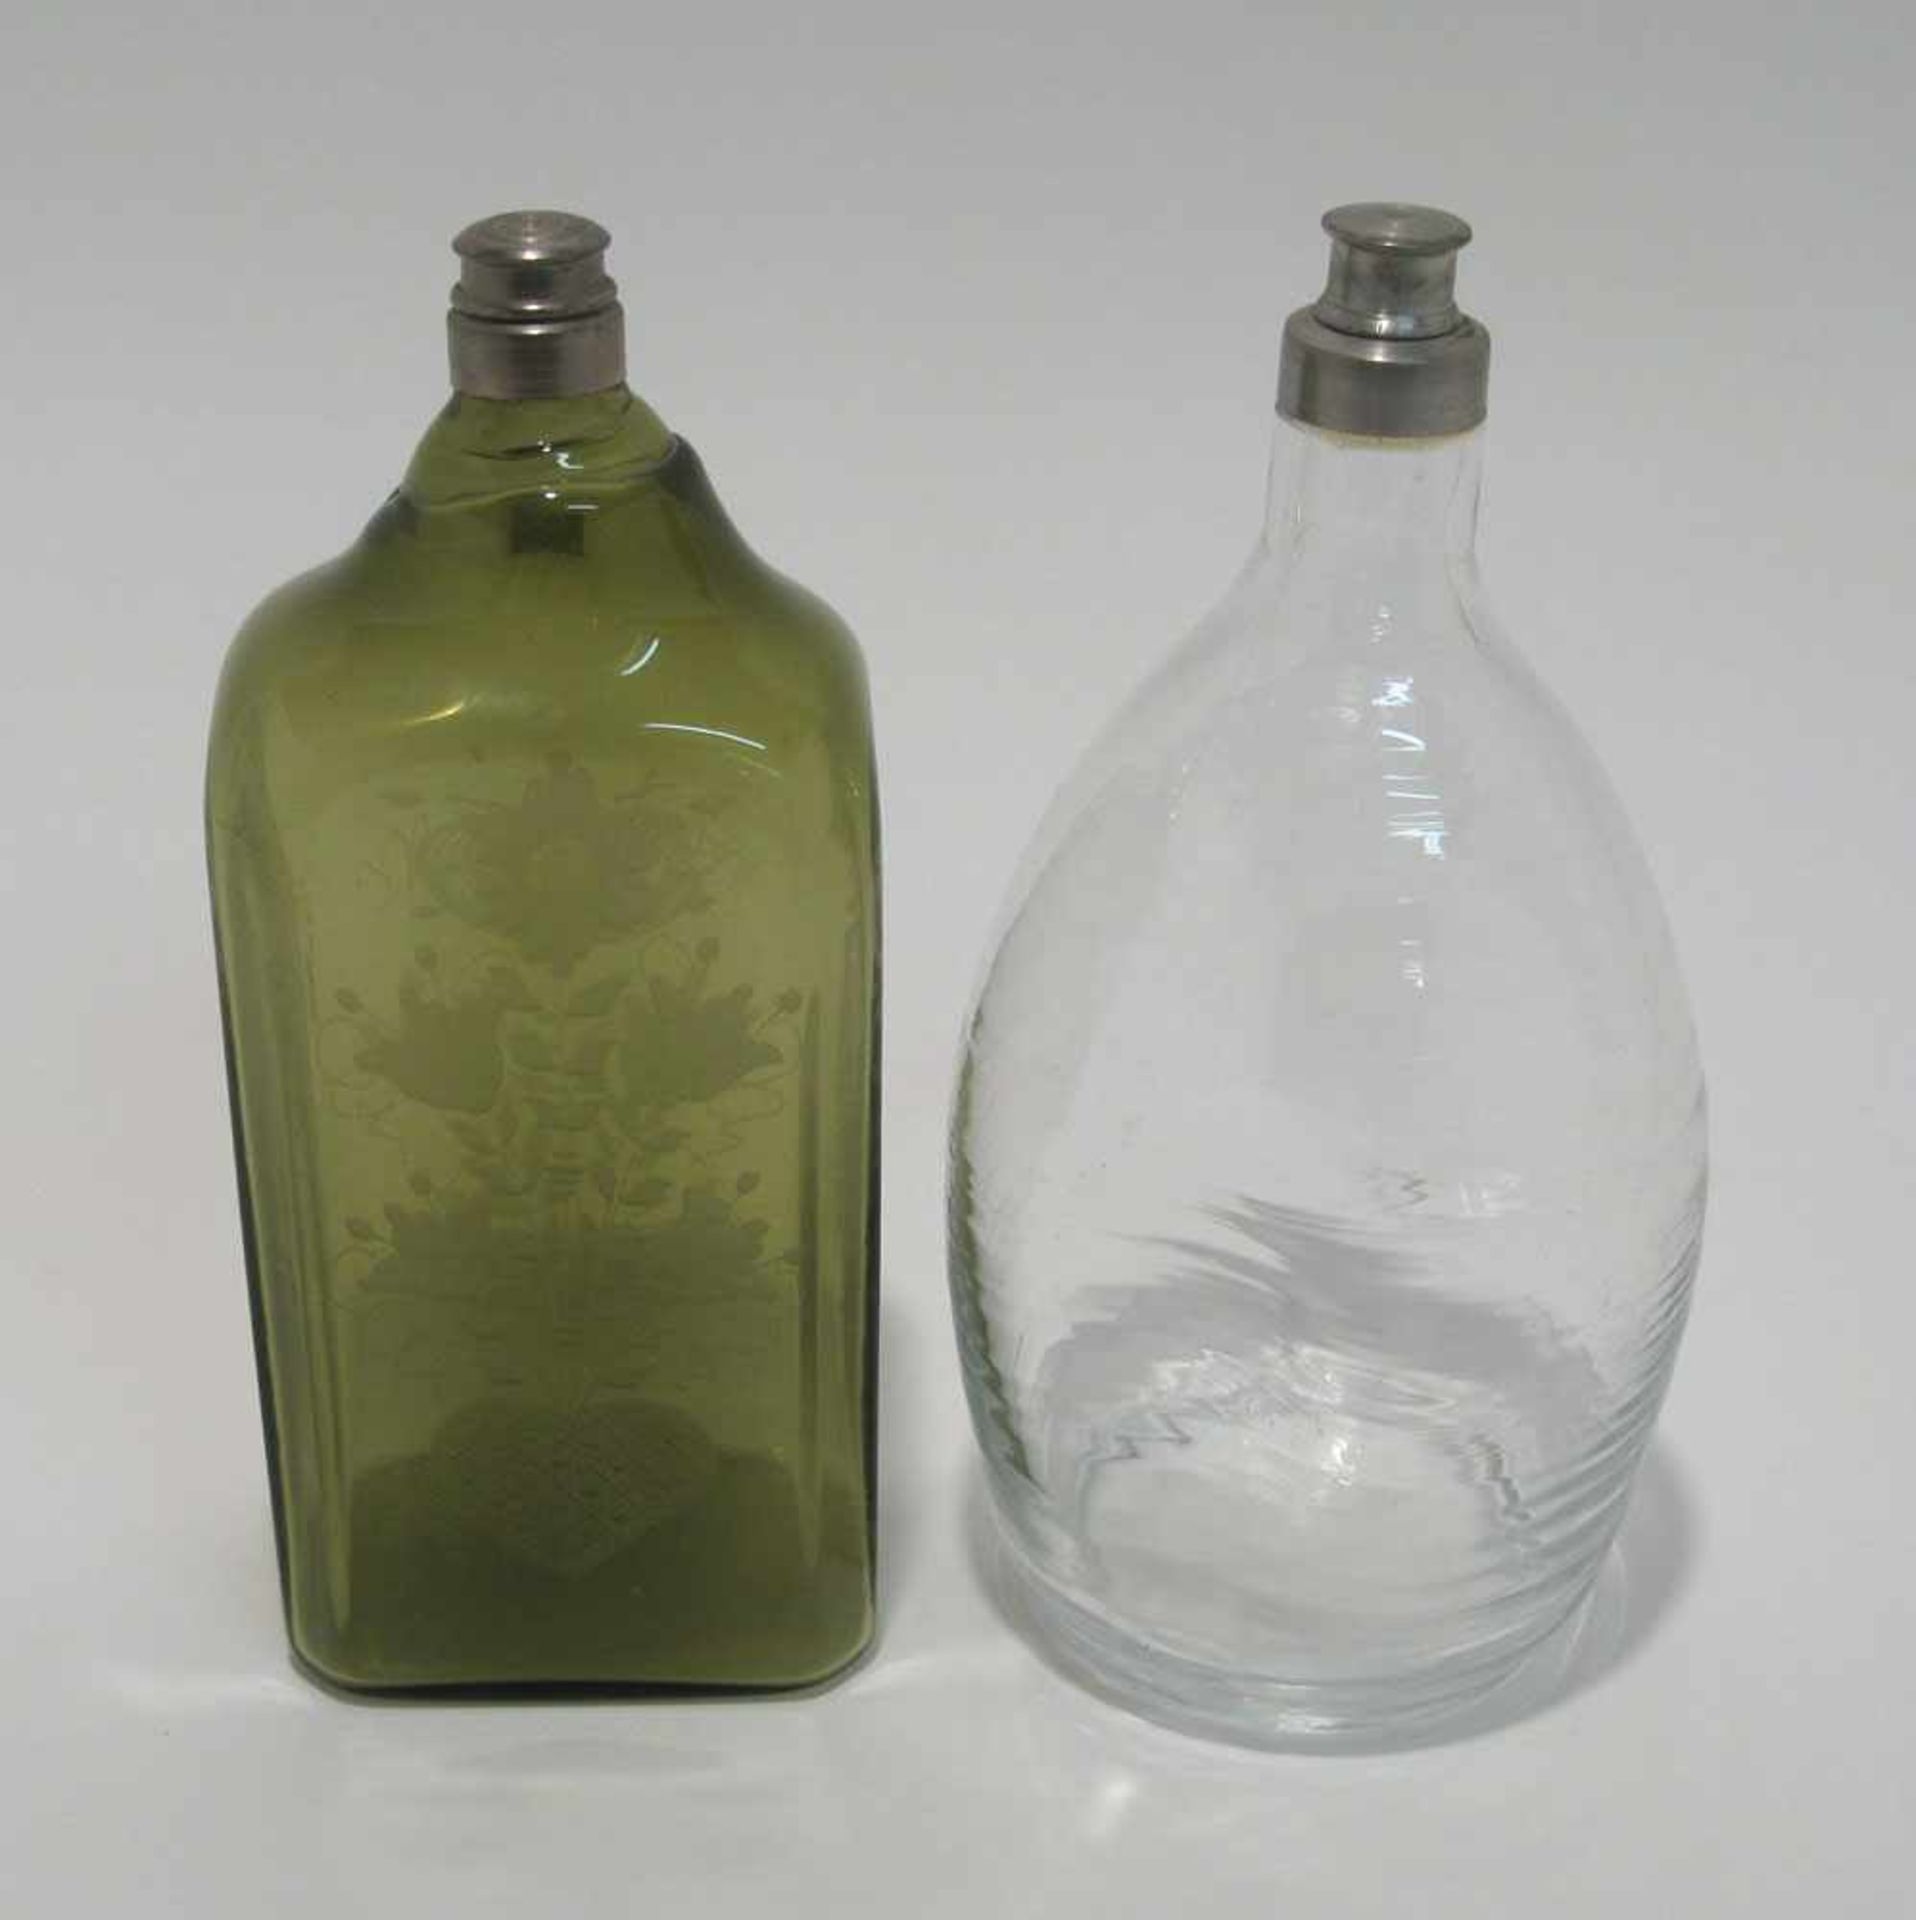 Zwei Flaschen Neuzeitlich. Grüne Vierkantflasche mit gerutschtem Dekor bzw. farblose ovale Flasche